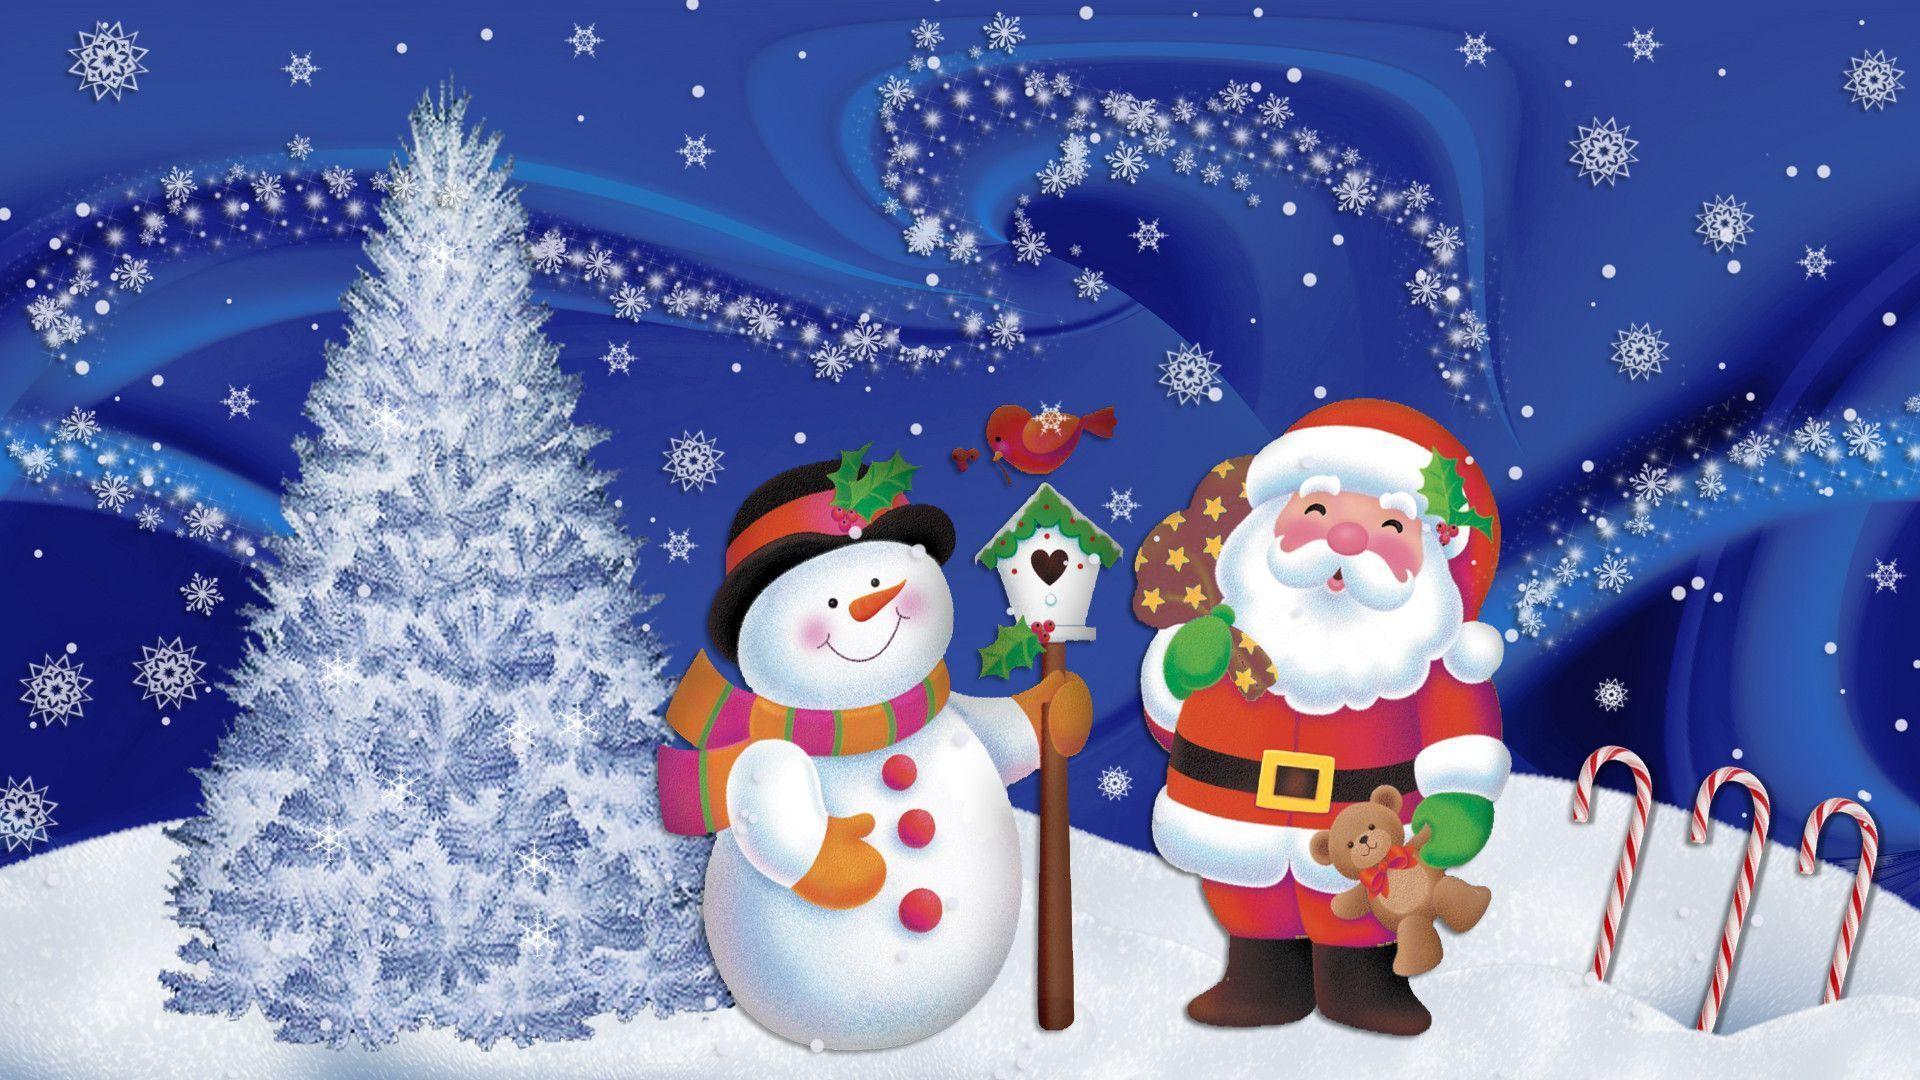 Snowman Merry Christmas Wallpaper. High Definition Wallpaper